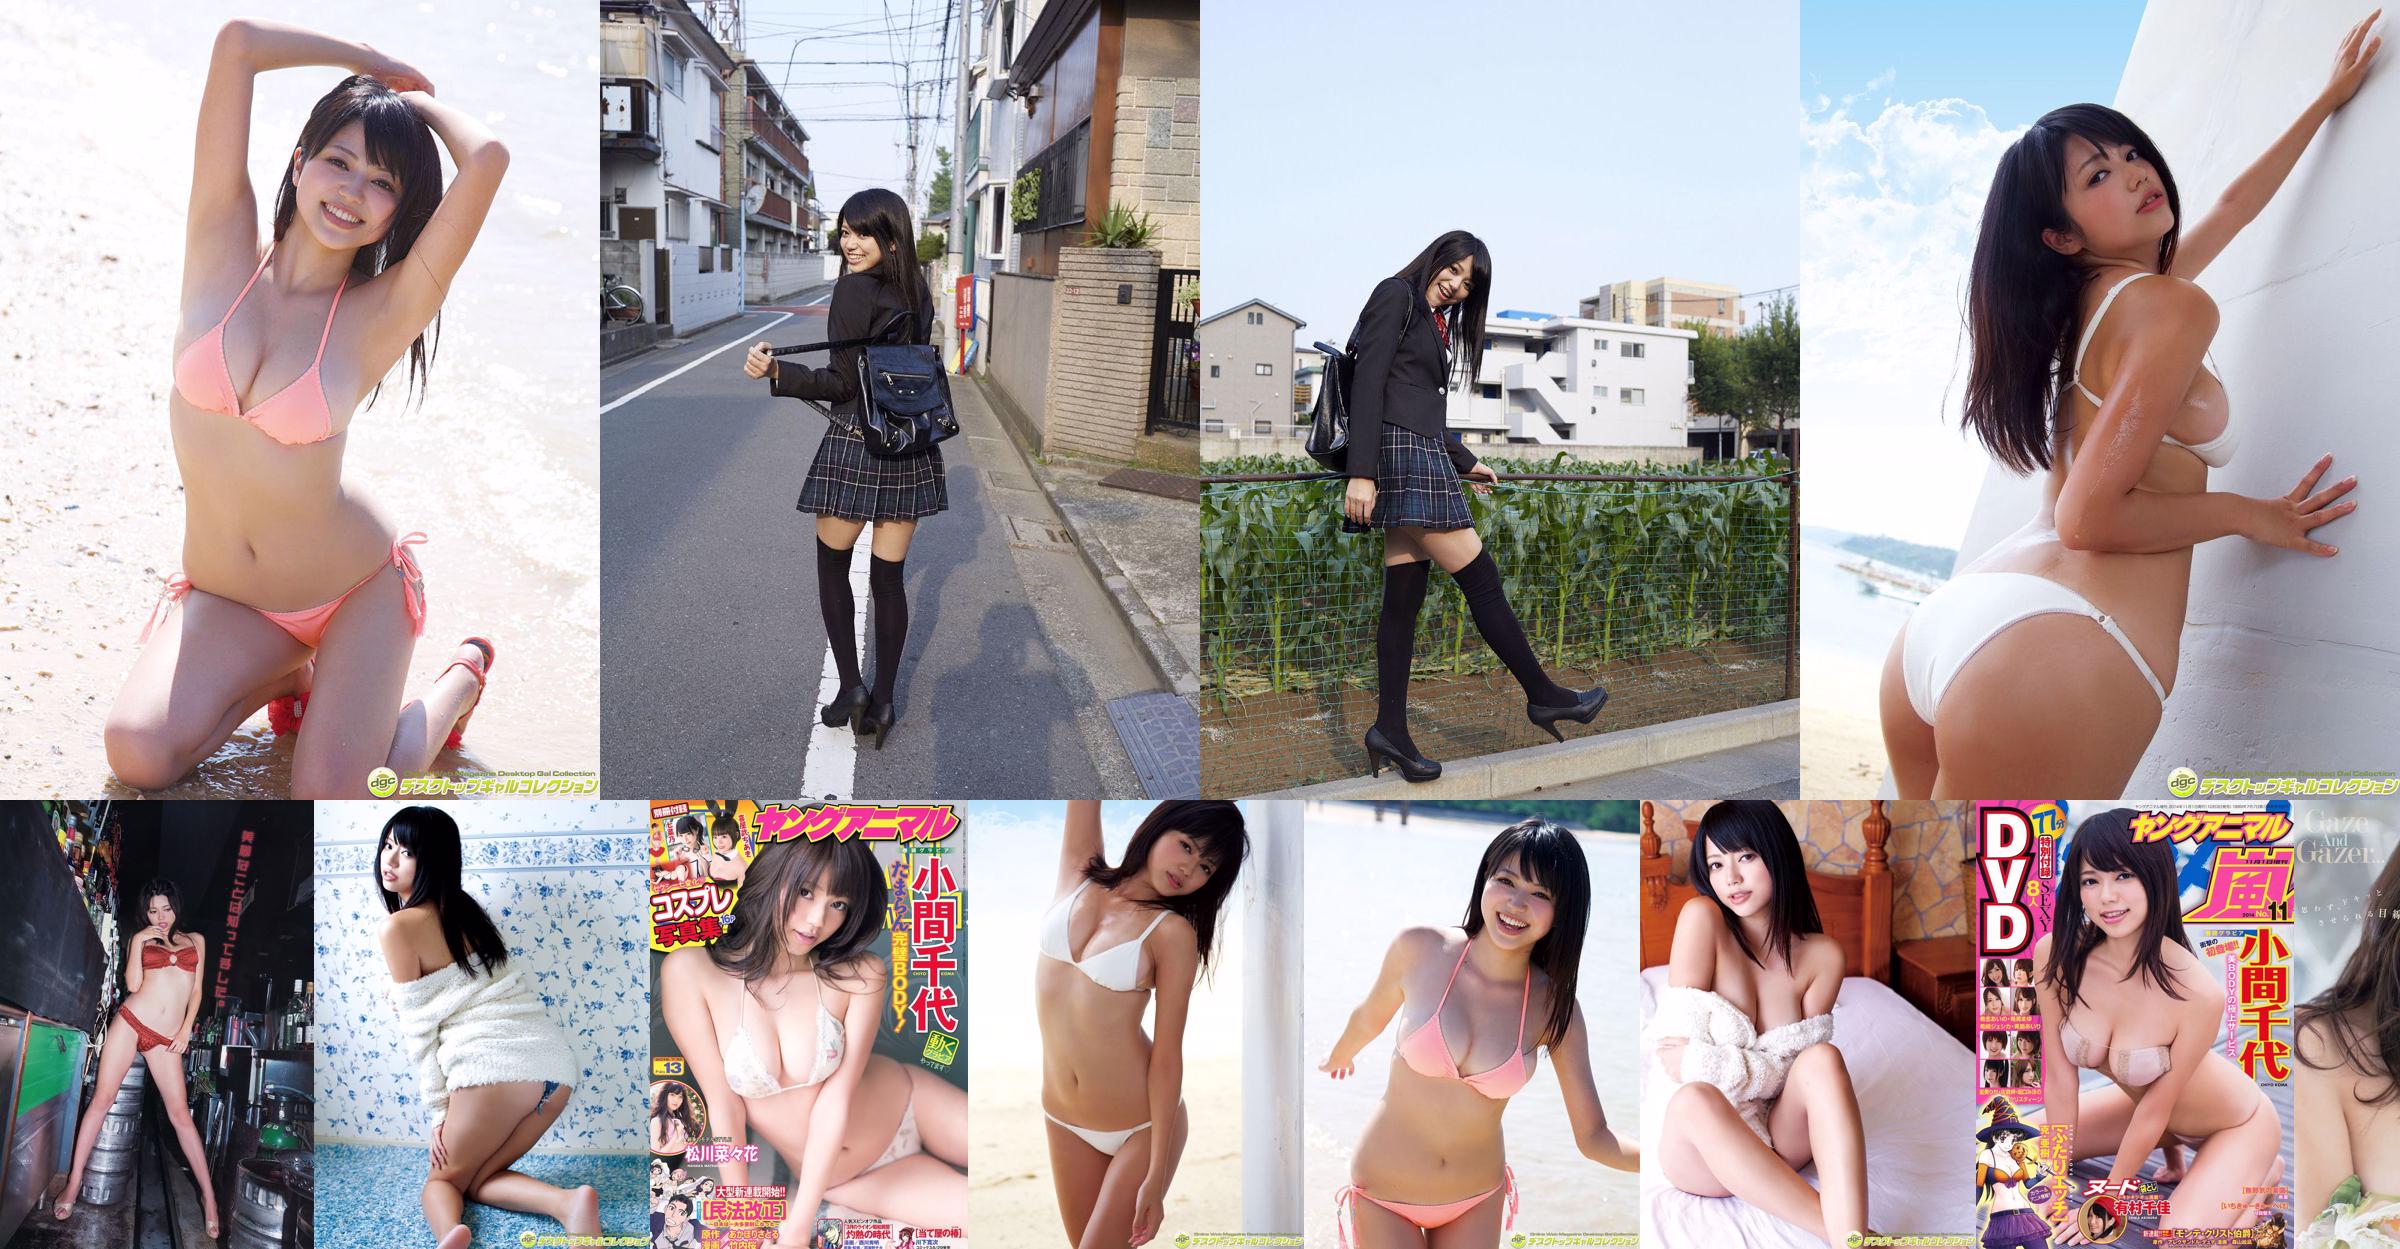 Chiyo Koma [Numero speciale di Young Animal Arashi] Rivista fotografica n. 11 2014 No.c25737 Pagina 4